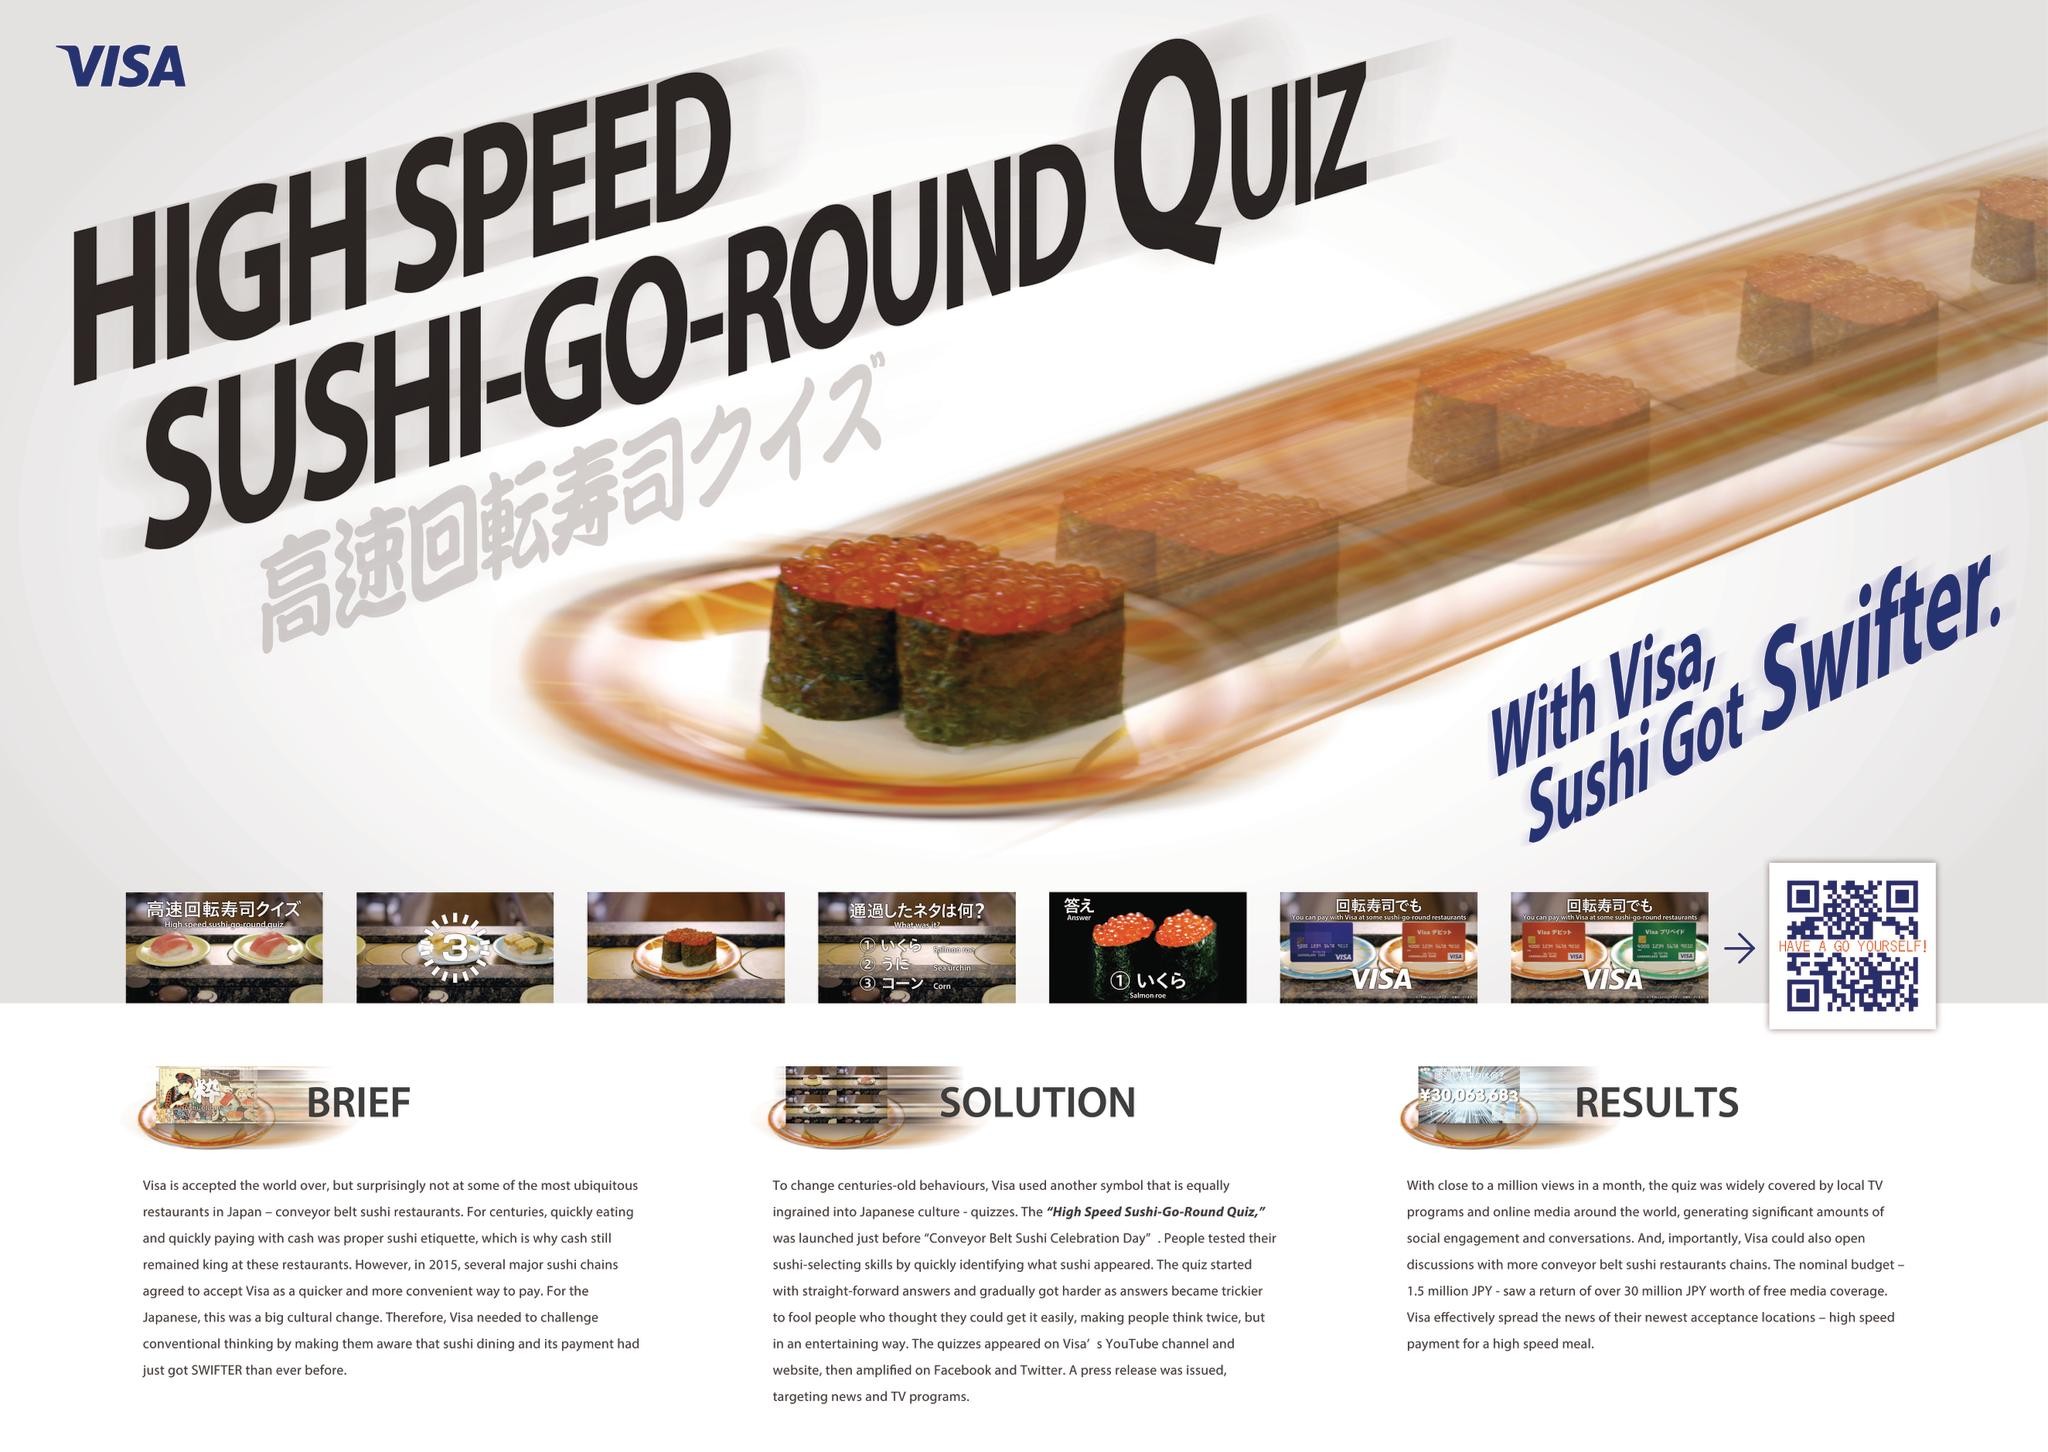 High Speed Sushi-Go- Round Quiz